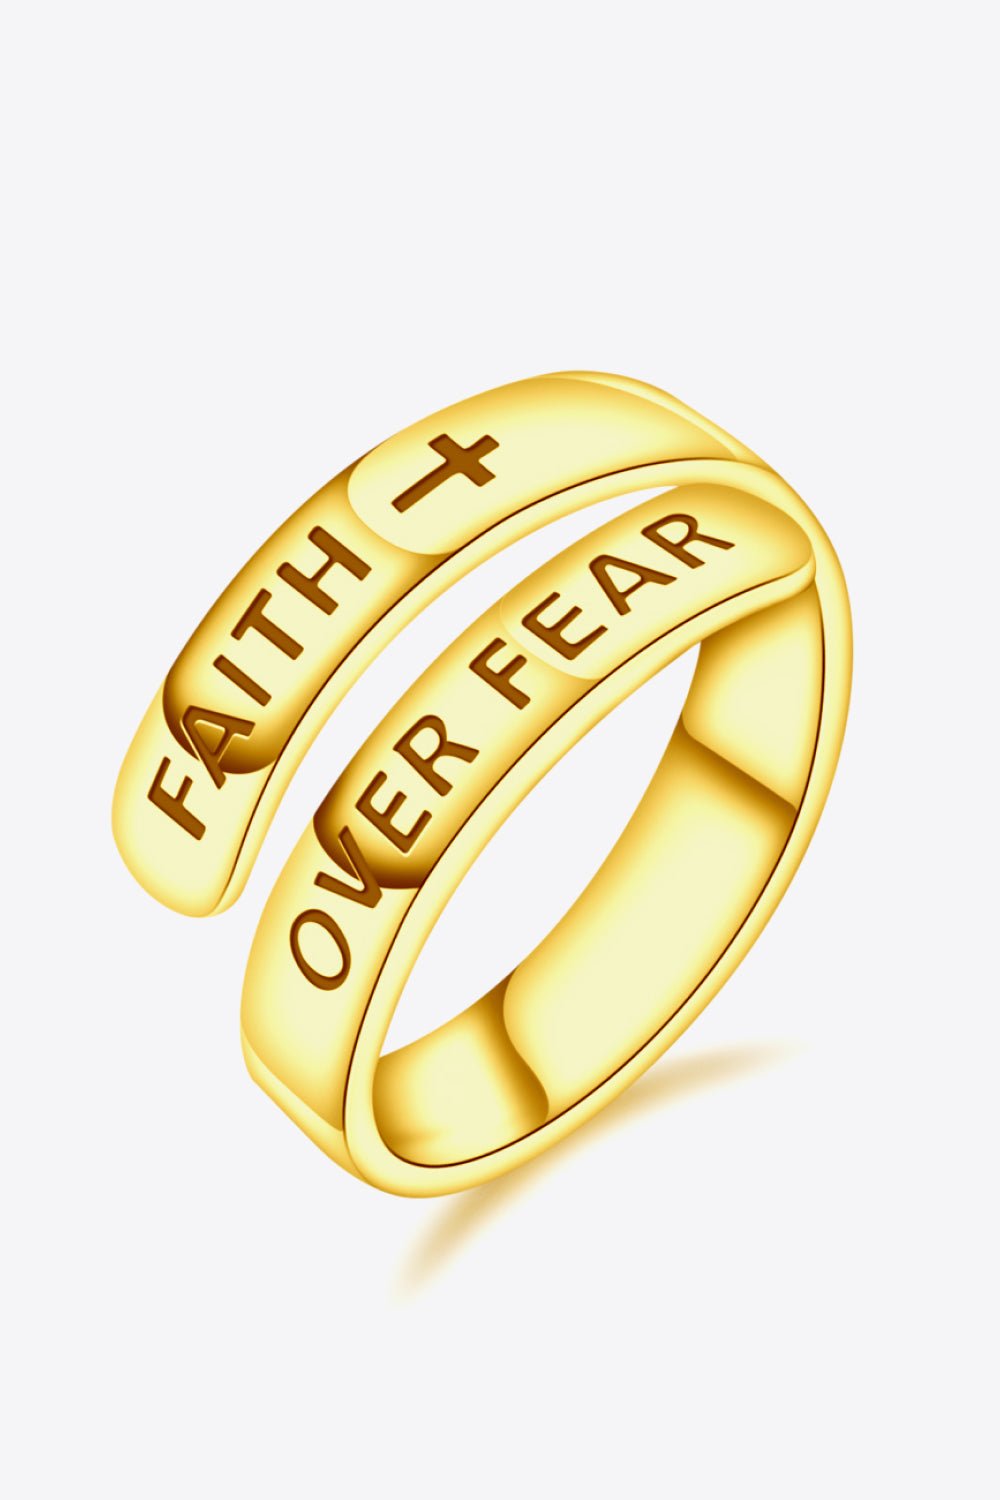 FAITH OVER FEAR Ring - Tangerine Goddess